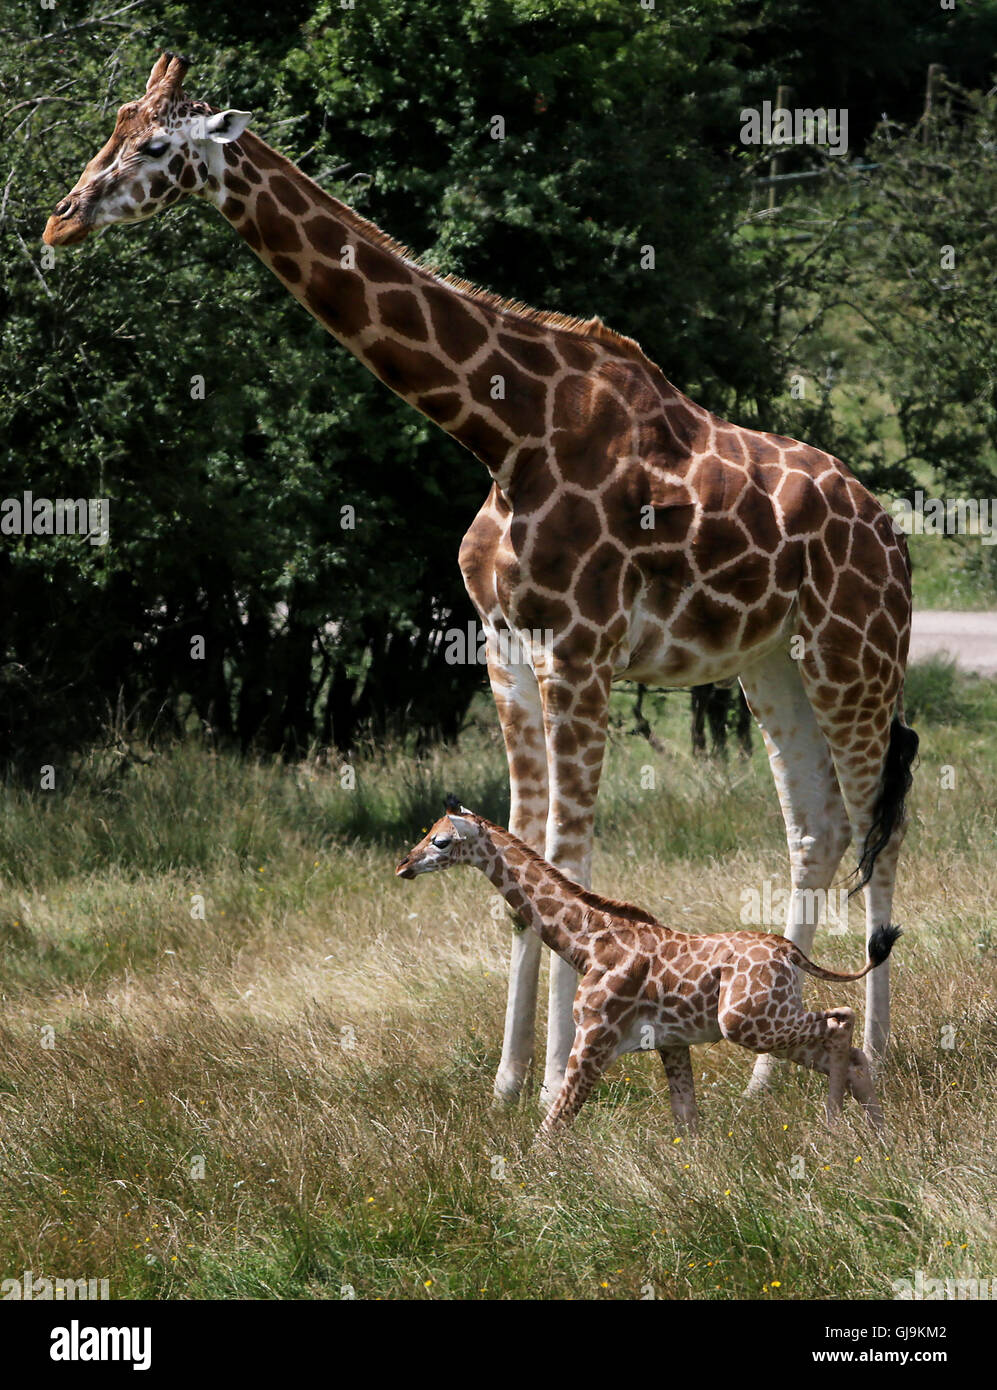 È sotto embargo per 0001 Lunedì 15 Agosto Un come ancora senza nome donna giraffa Rothschild vitello con sua madre lunare, esplorare il suo nuovo ambiente di oltre 600 ettari di riserva animale al Port Lympne riserva vicino Ashford nel Kent. Foto Stock